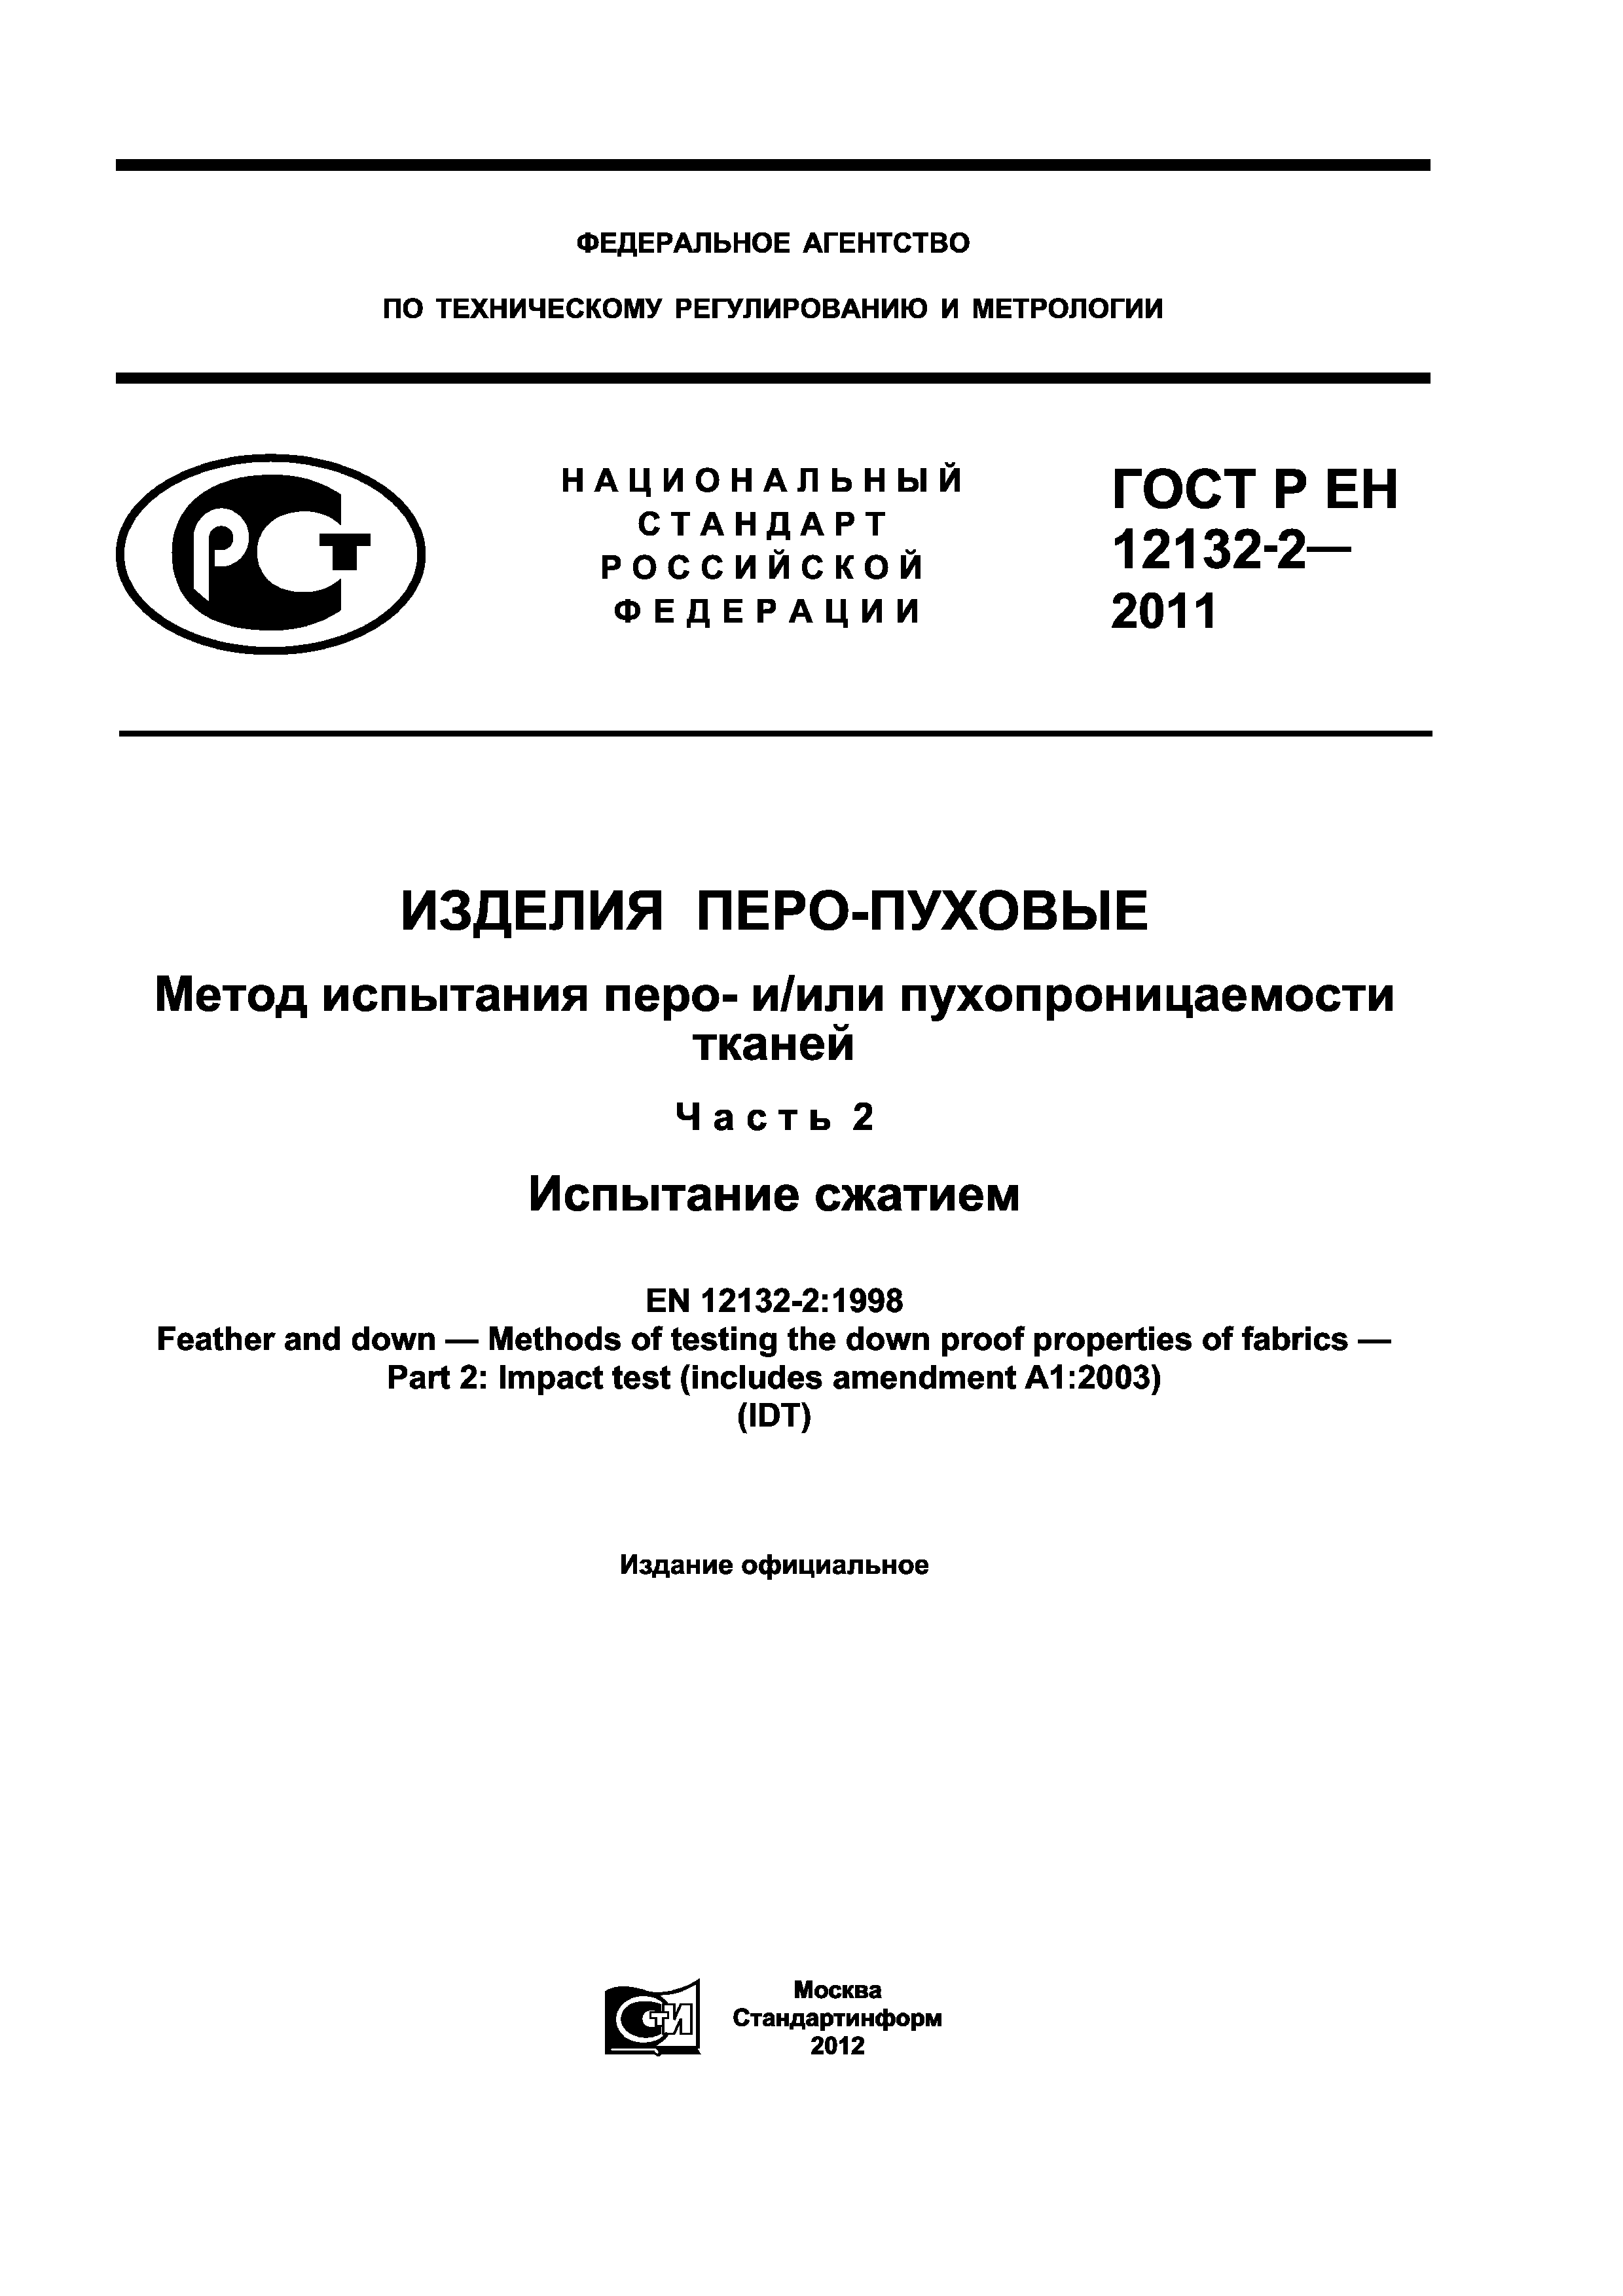 ГОСТ Р ЕН 12132-2-2011